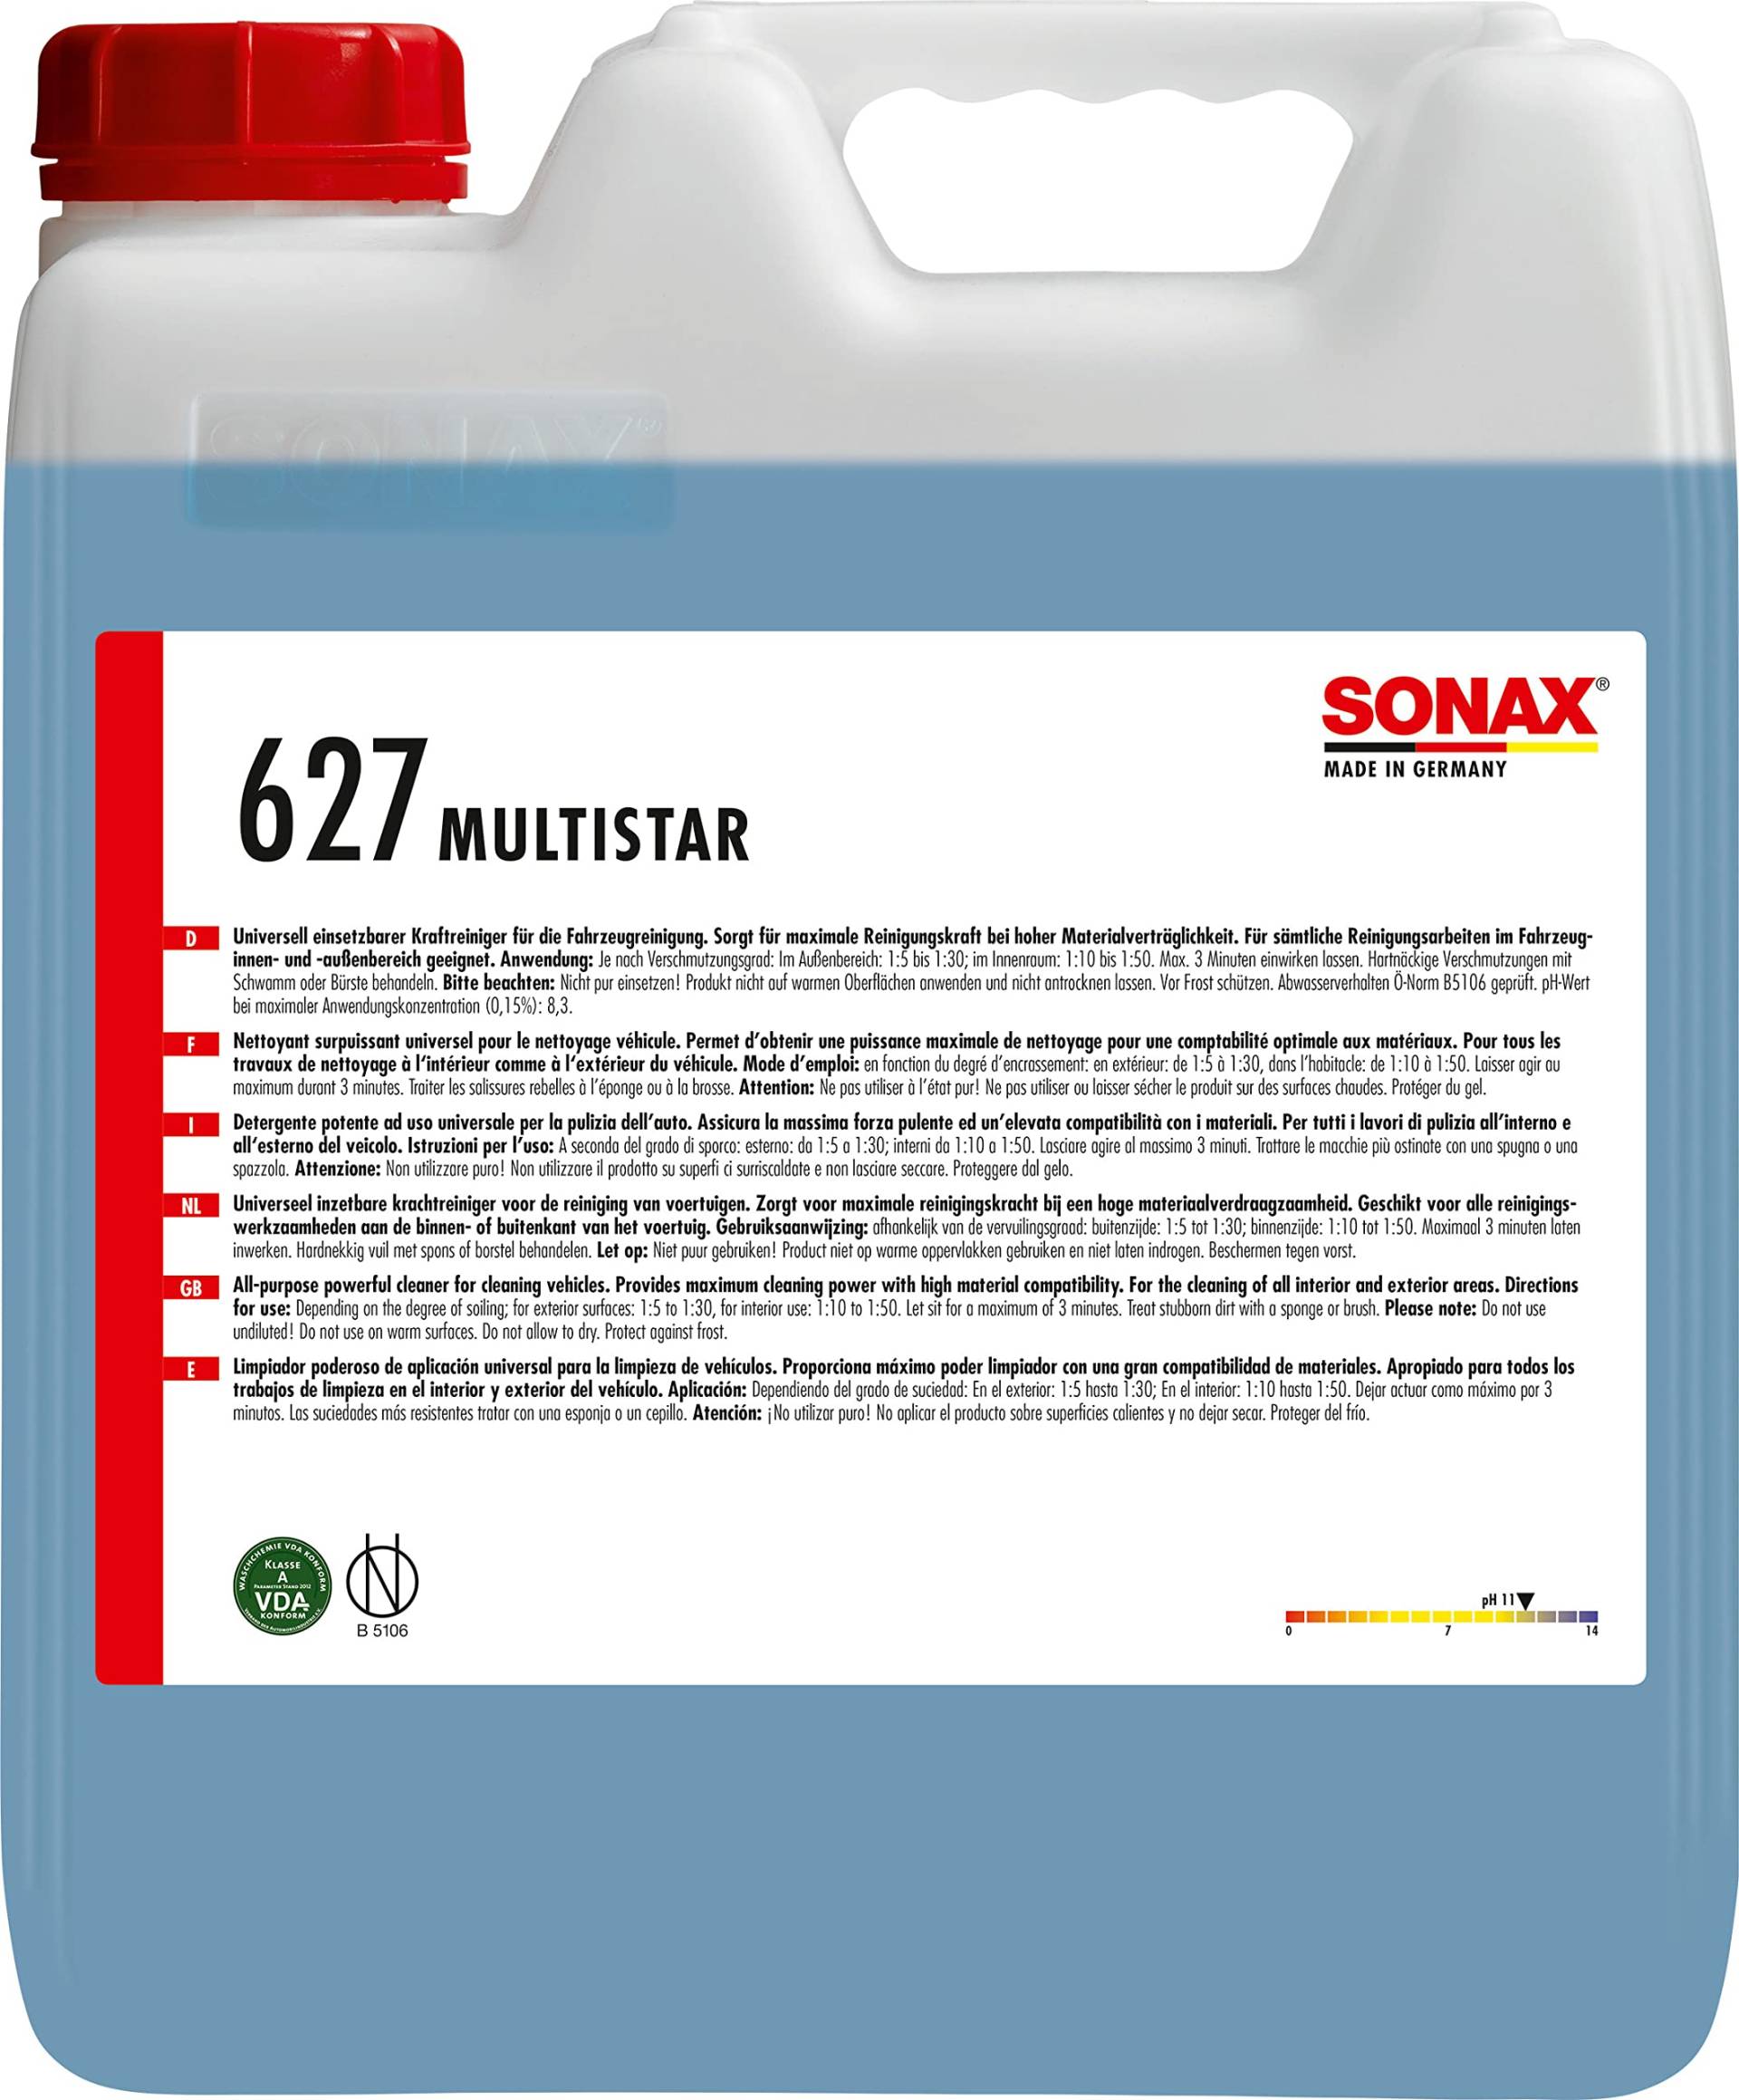 SONAX MultiStar (10 Liter) universell einsetzbarer, phosphathaltiger Vorreiniger für Innen & Außen, Art-Nr. 06276000 von SONAX